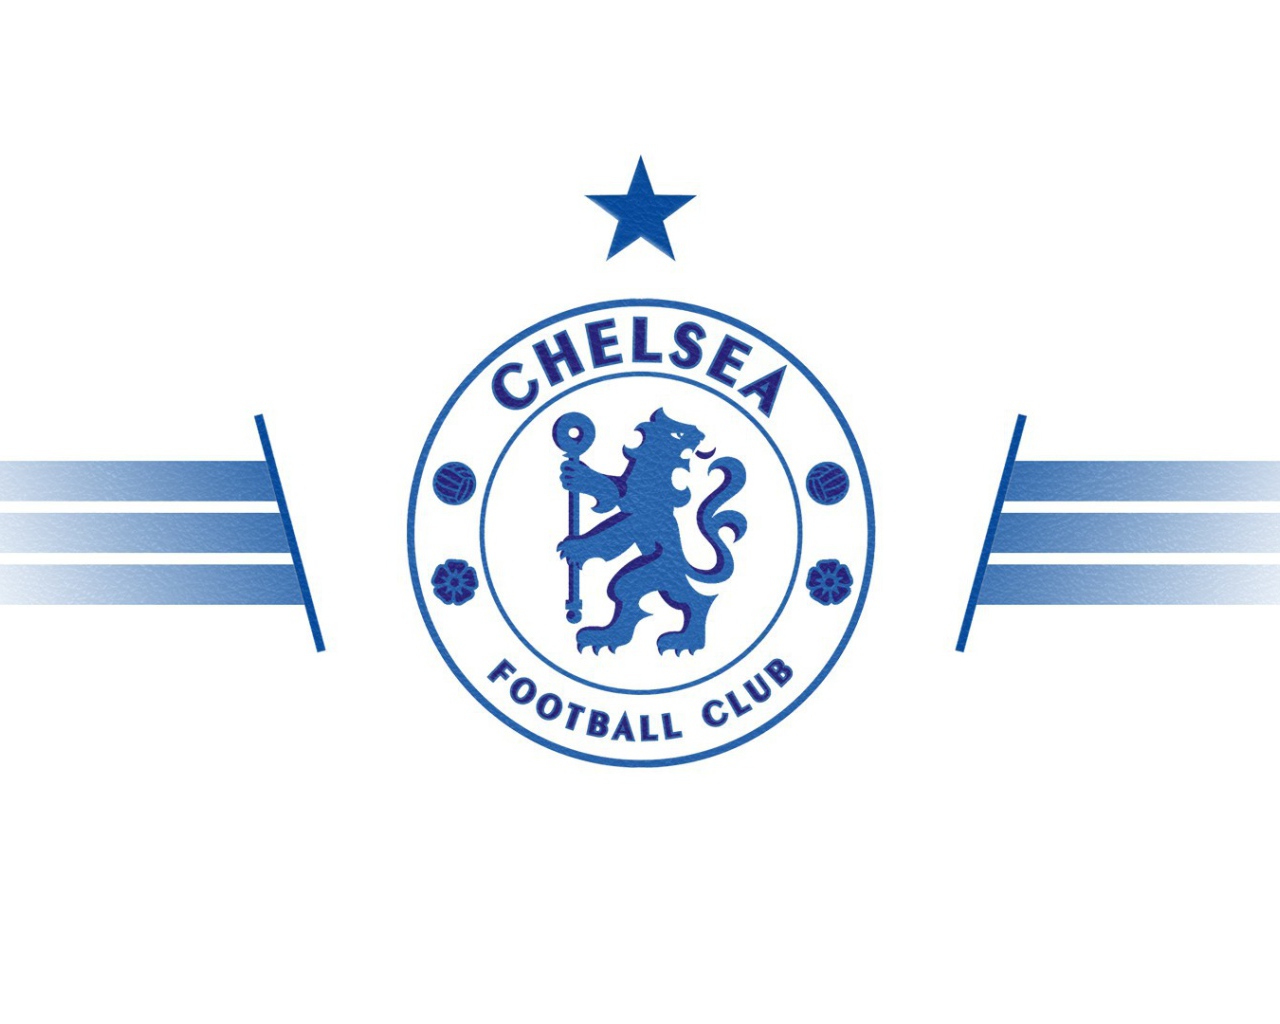 Футбольный клуб Челси, логотип  голубой на белом